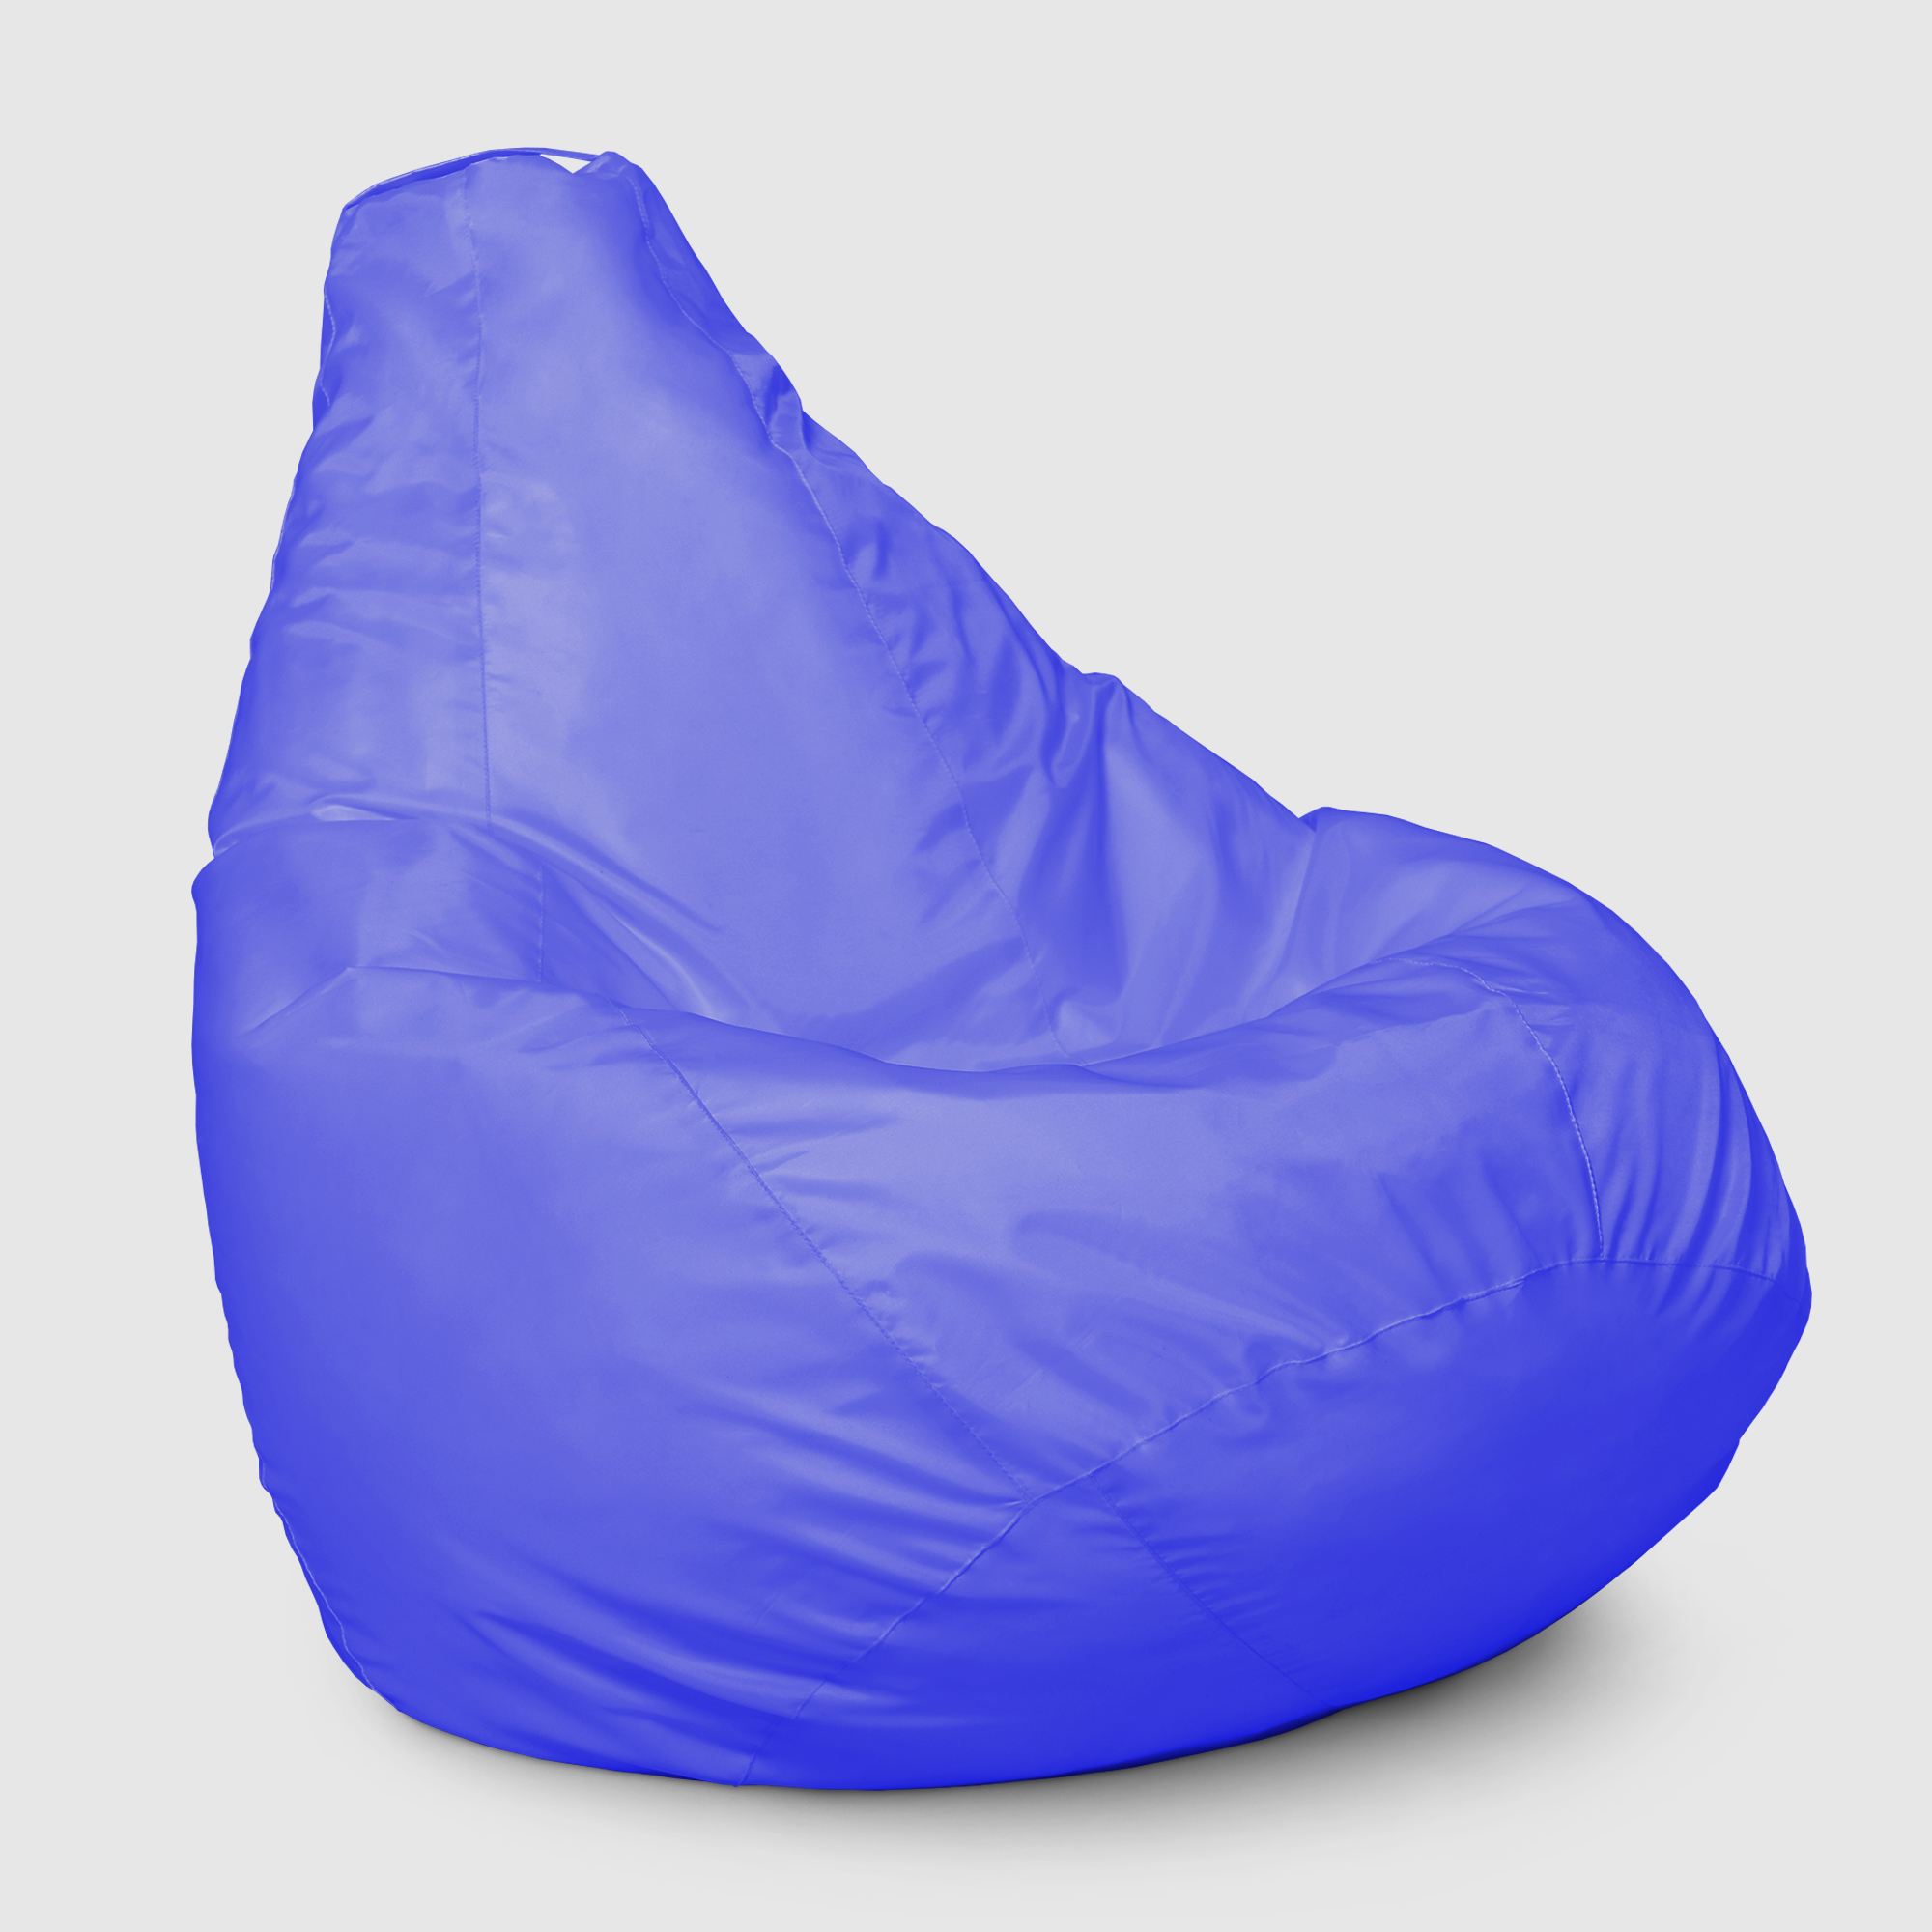 Кресло мешок Dreambag Меган xl Синее 85х85х125 см кресло мешок dreambag меган xl лайм 85х85х125см